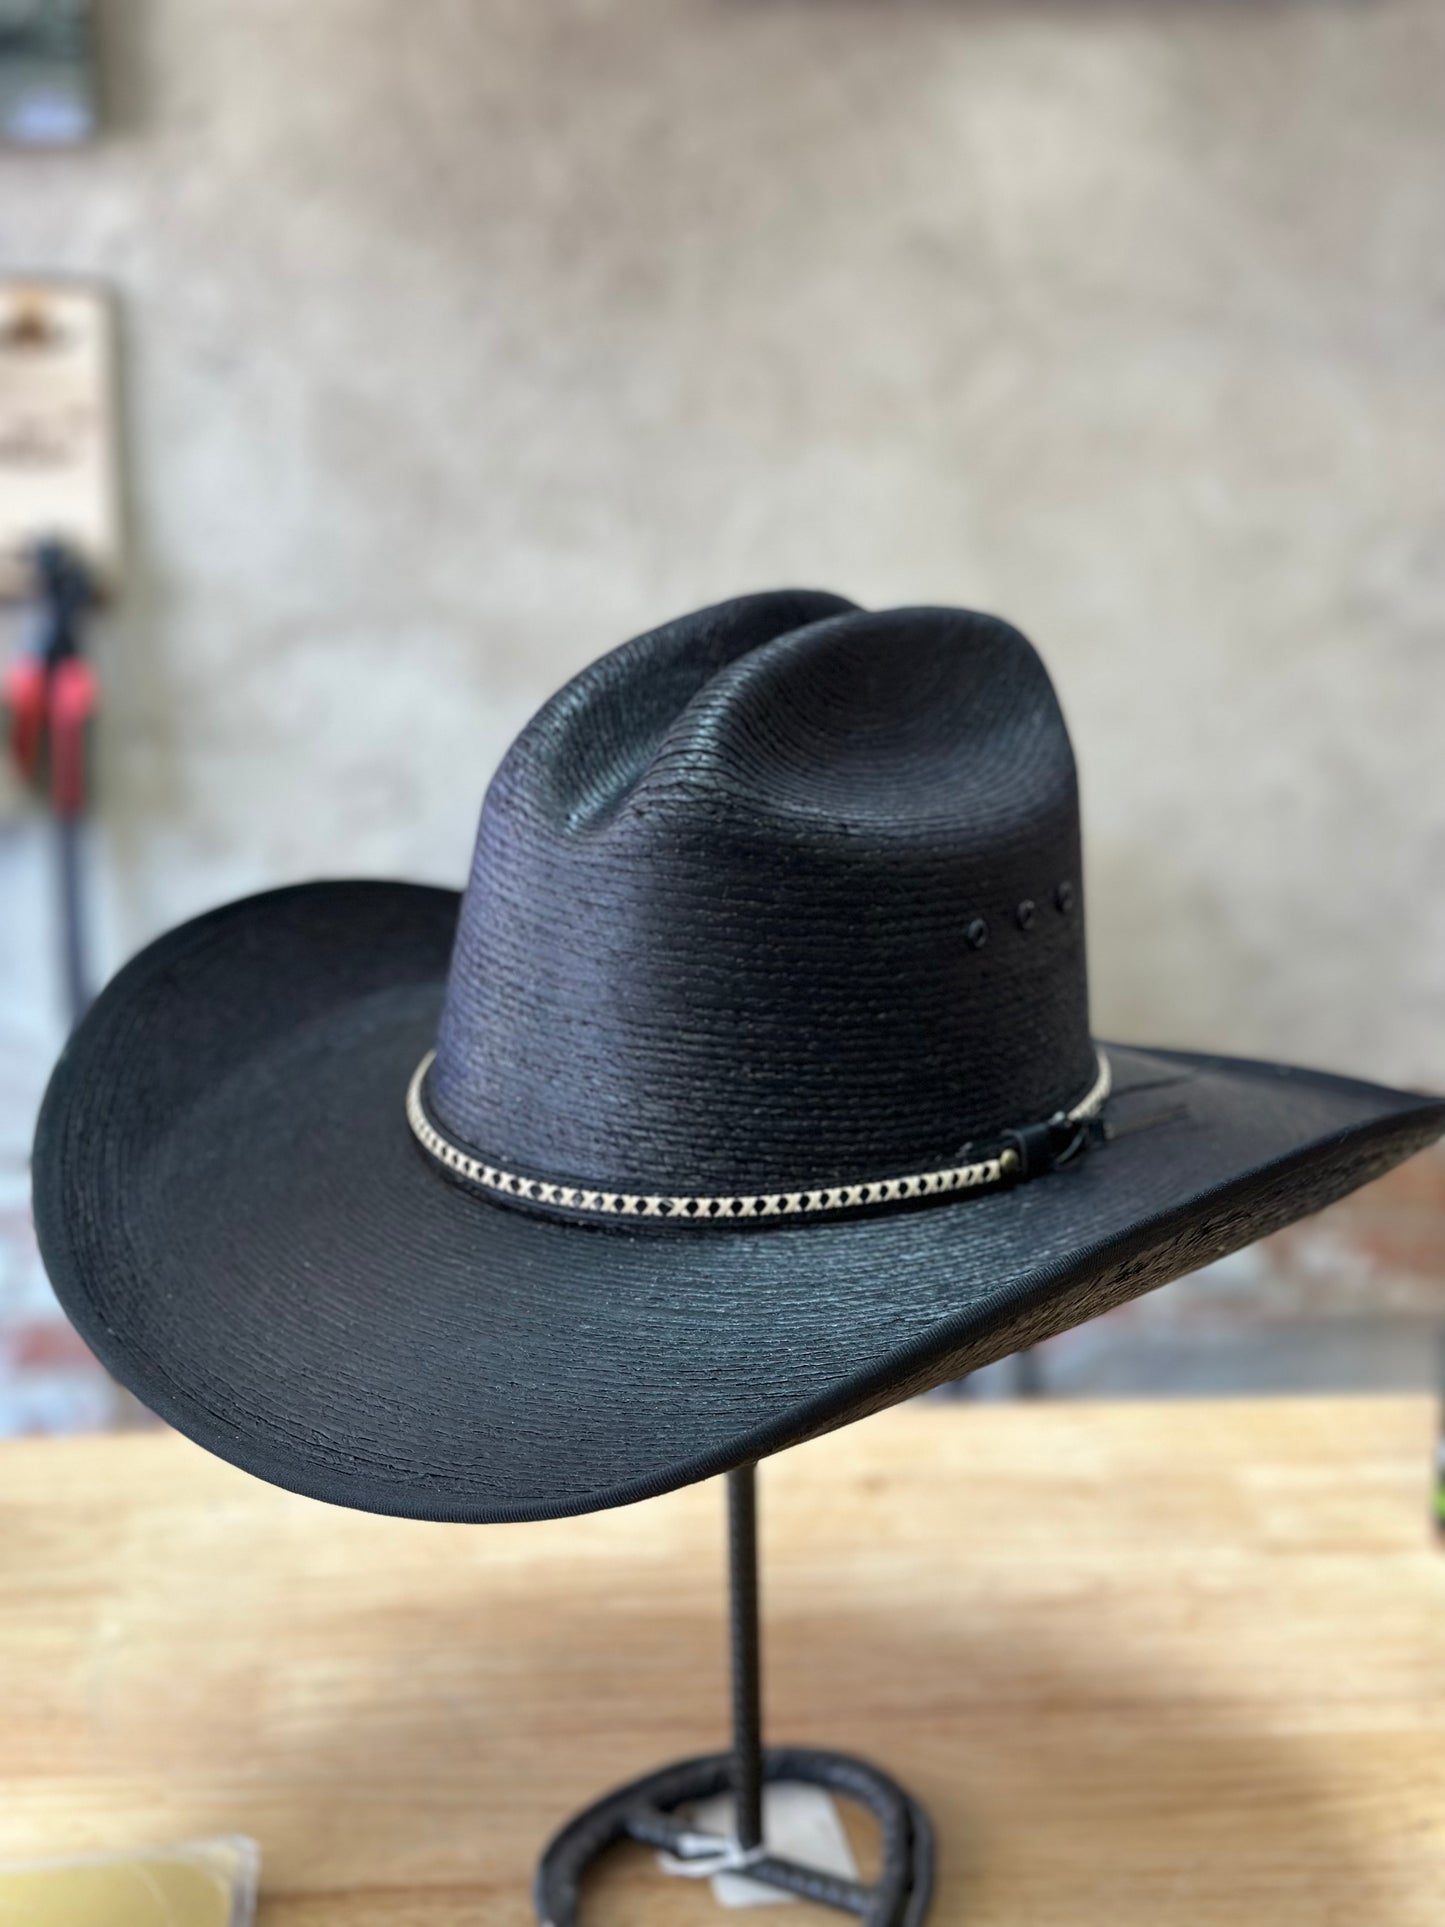 Resistol Asphalt Cowboy Palm Cowboy Hat - Jason Aldean Collection